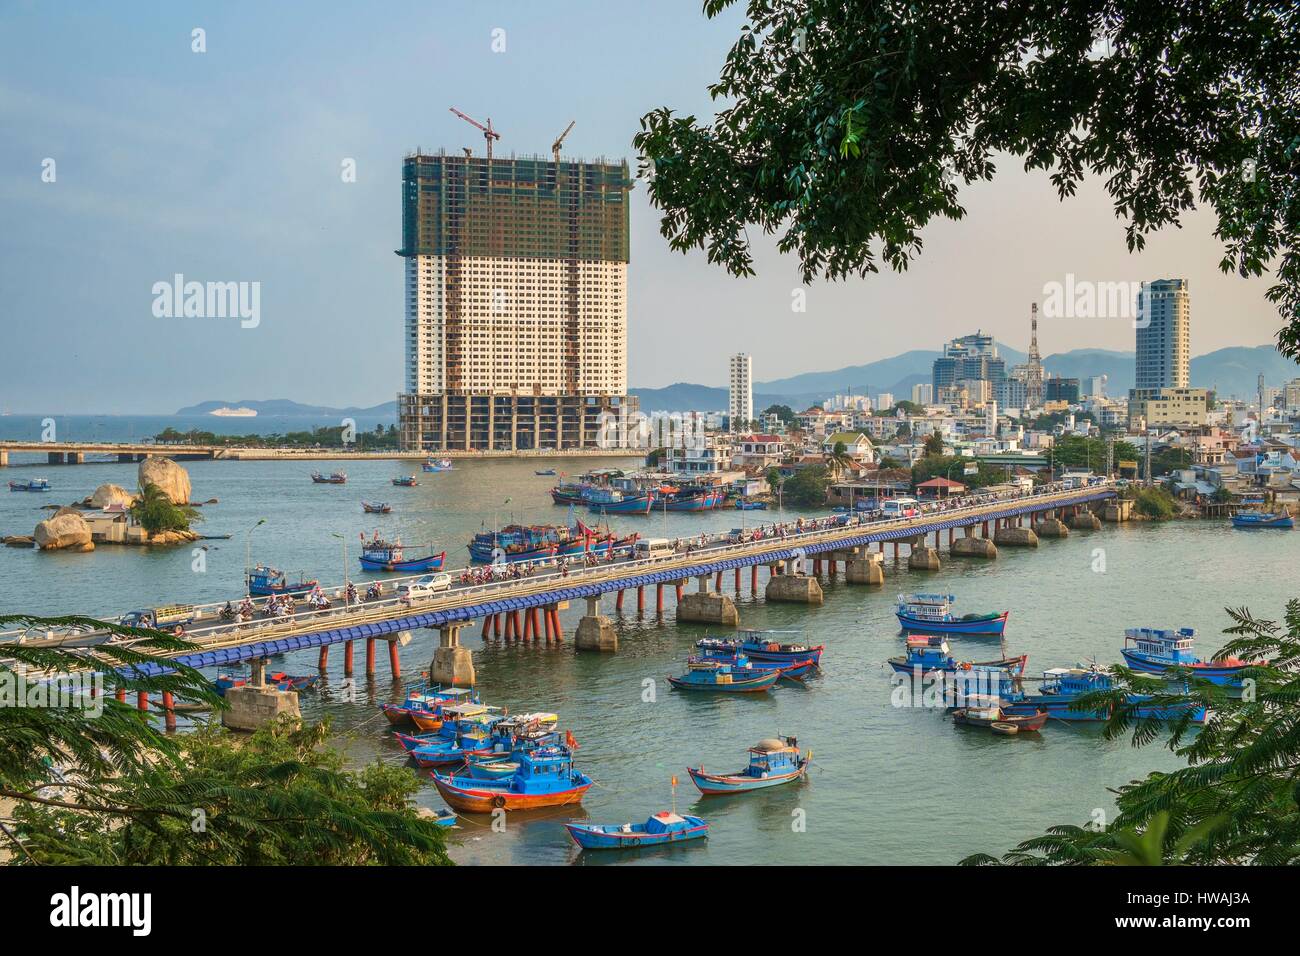 Le Vietnam du Sud, région de la côte centrale, la province de Khanh Hoa, Nha Trang, port de pêche, et le pont Xom Bong 48 Muong Thanh hotel histoires sous constr Banque D'Images